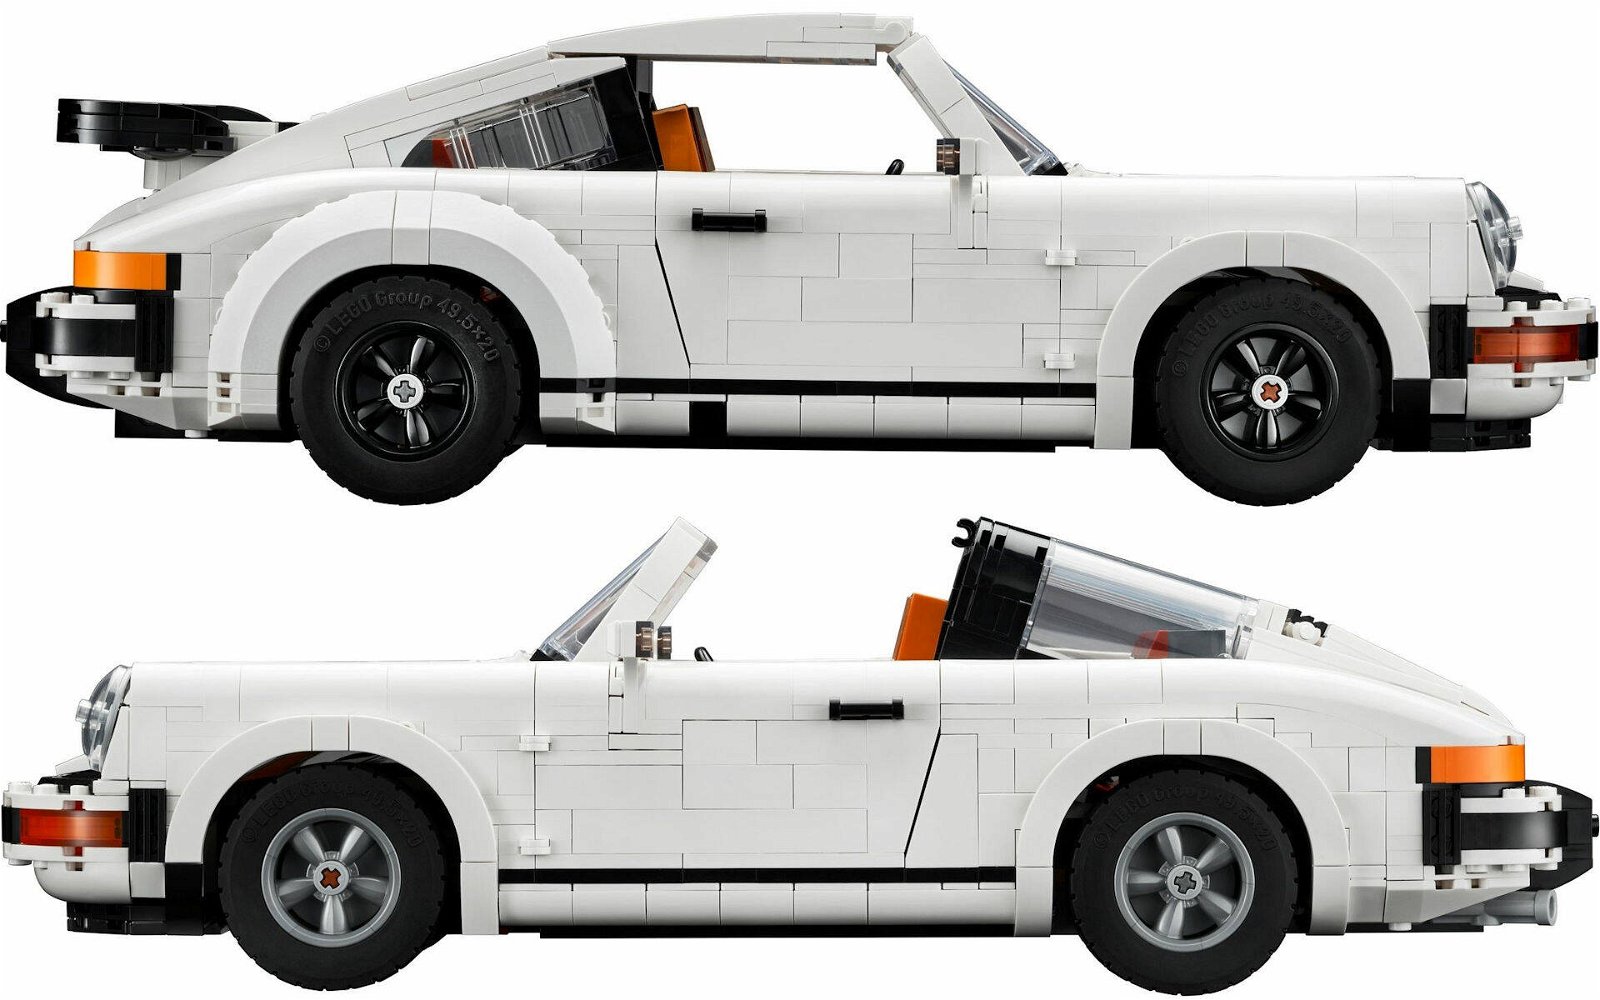 Immagine di LEGO MANIA. Costruiamo insieme il set #10295 Porsche 911... in doppio!